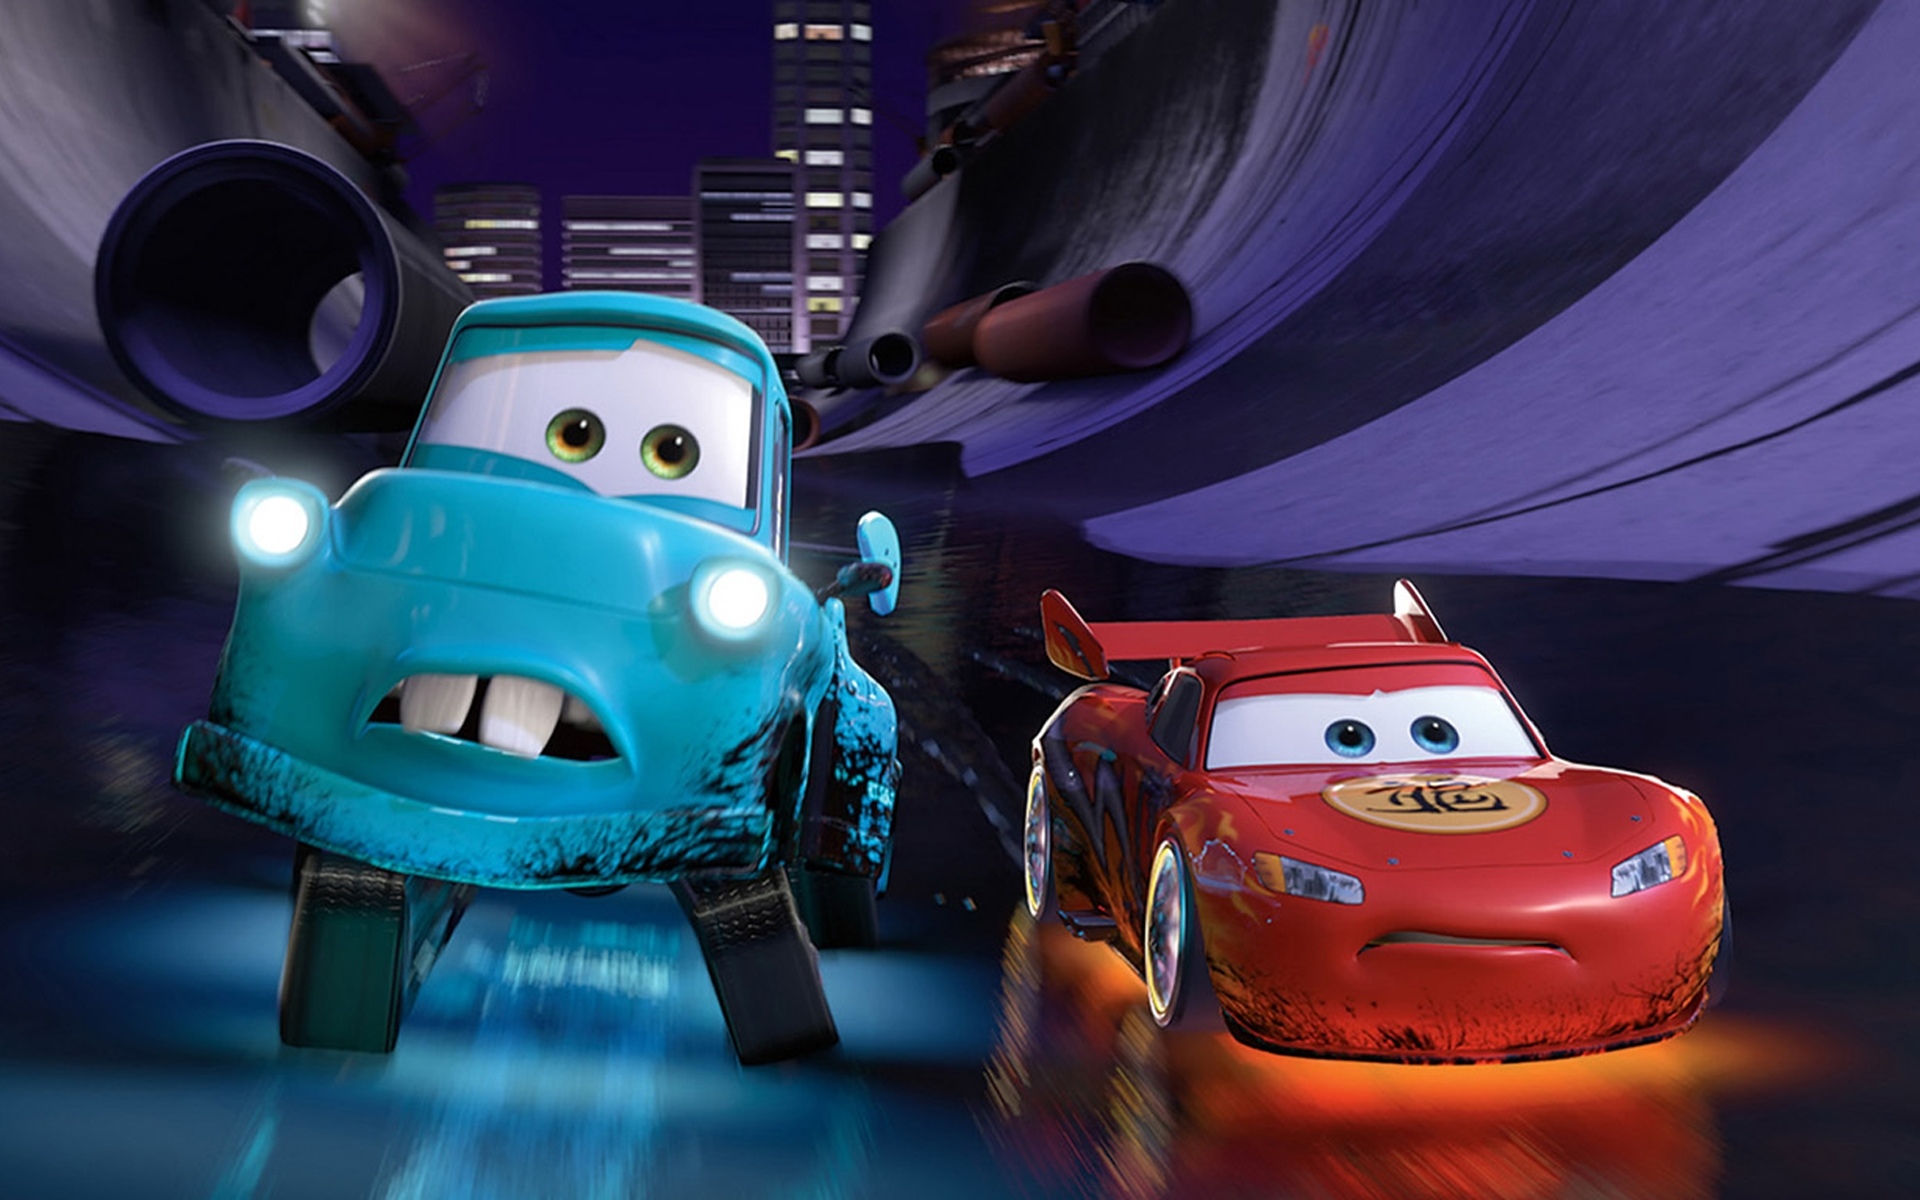 Fondos de pantalla de Cars 2, Wallpapers Disney Pixar